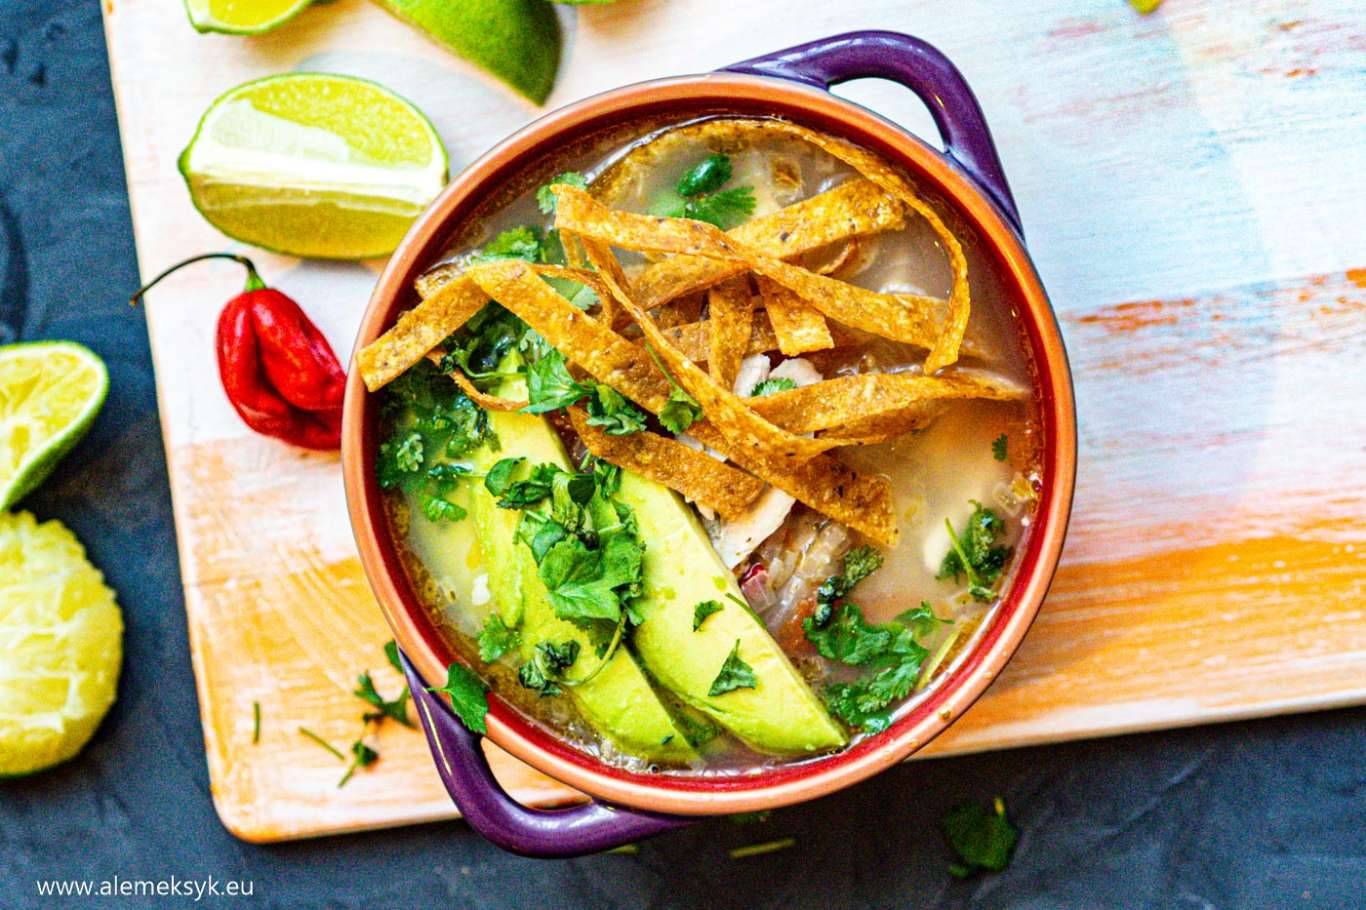 7 przepisów na meksykańskie zupy na każdą porę roku - wersje tradycyjne i nowoczesne